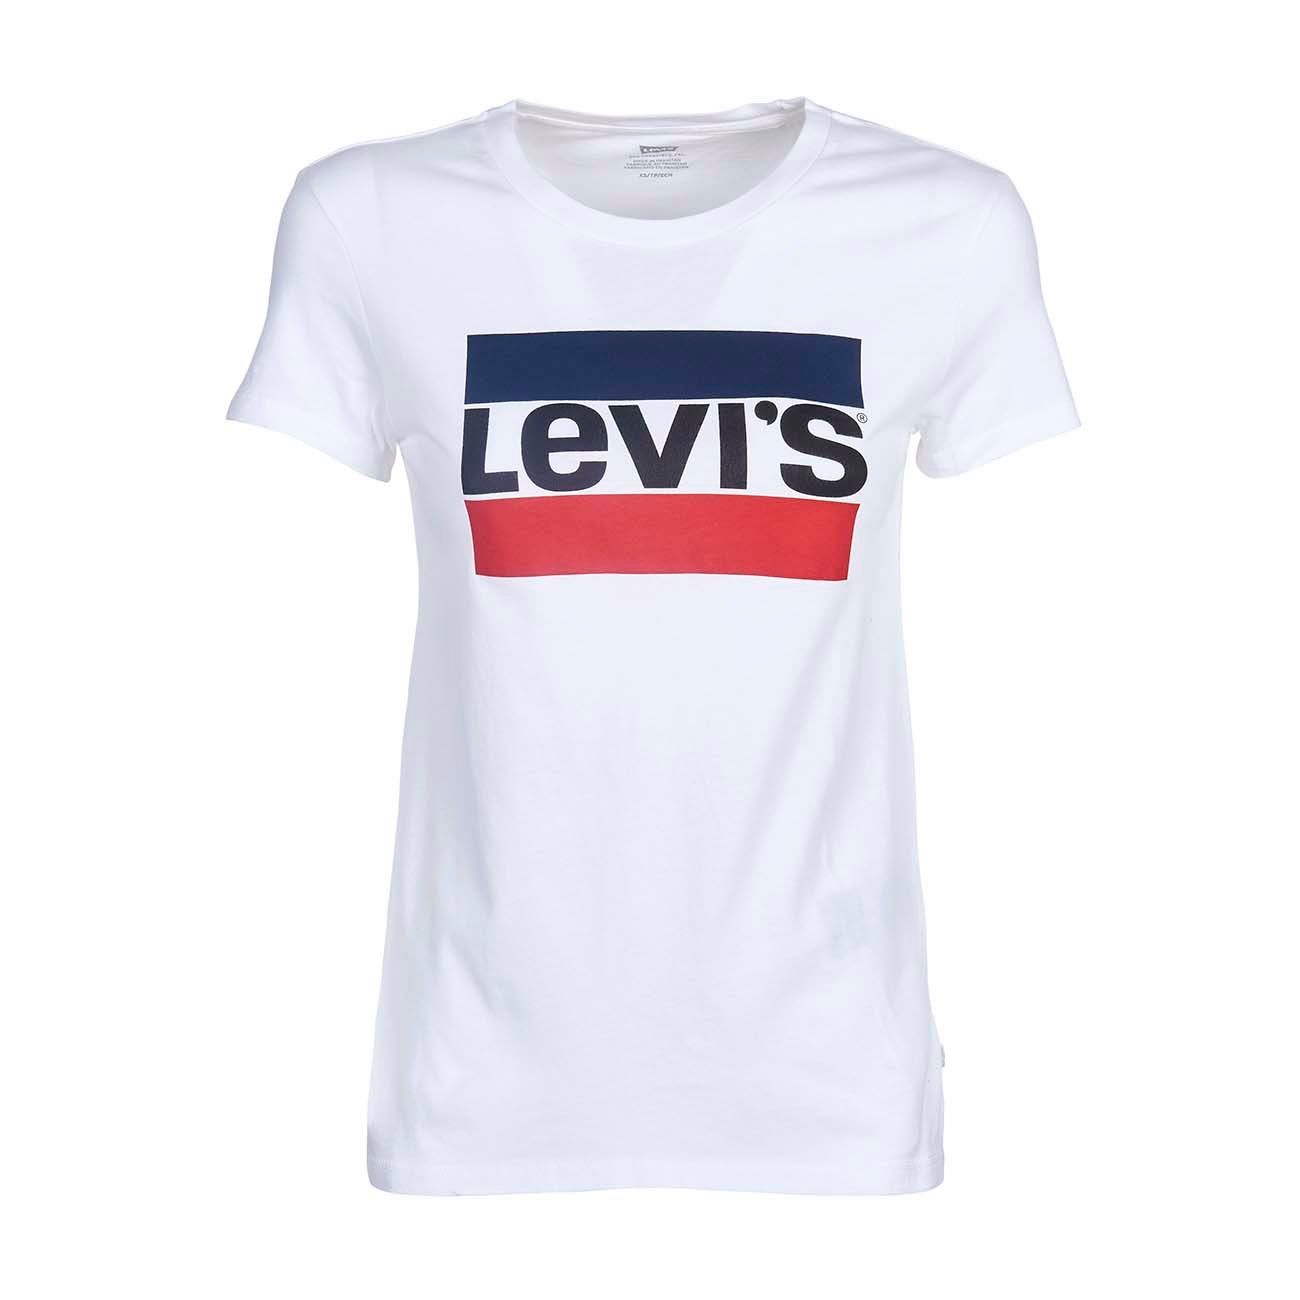 levis sportswear t shirt